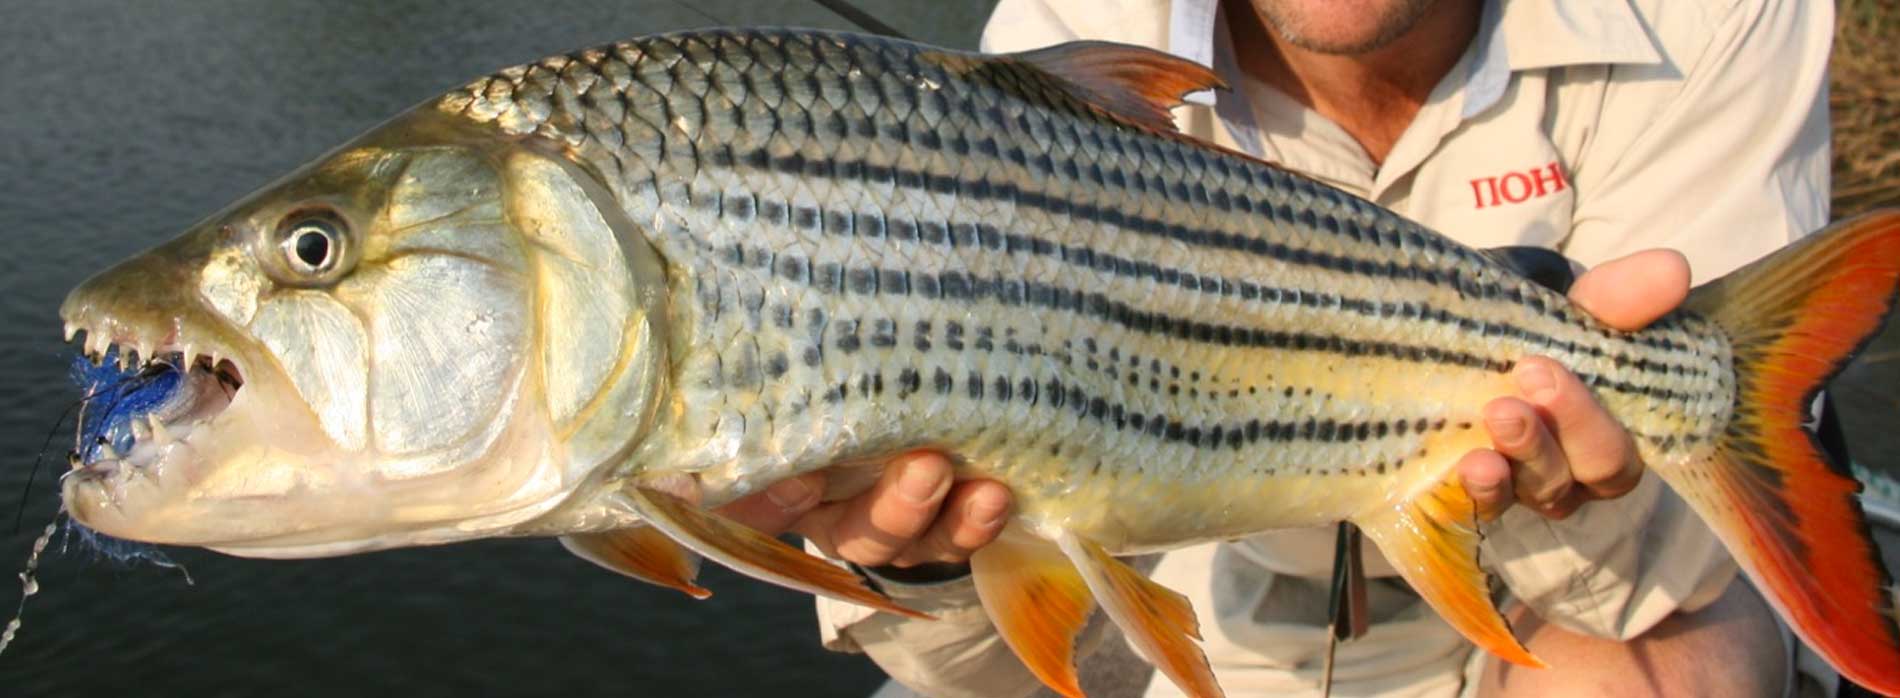 Тигровая рыба голиаф рецепт приготовления. водный монстр из африки